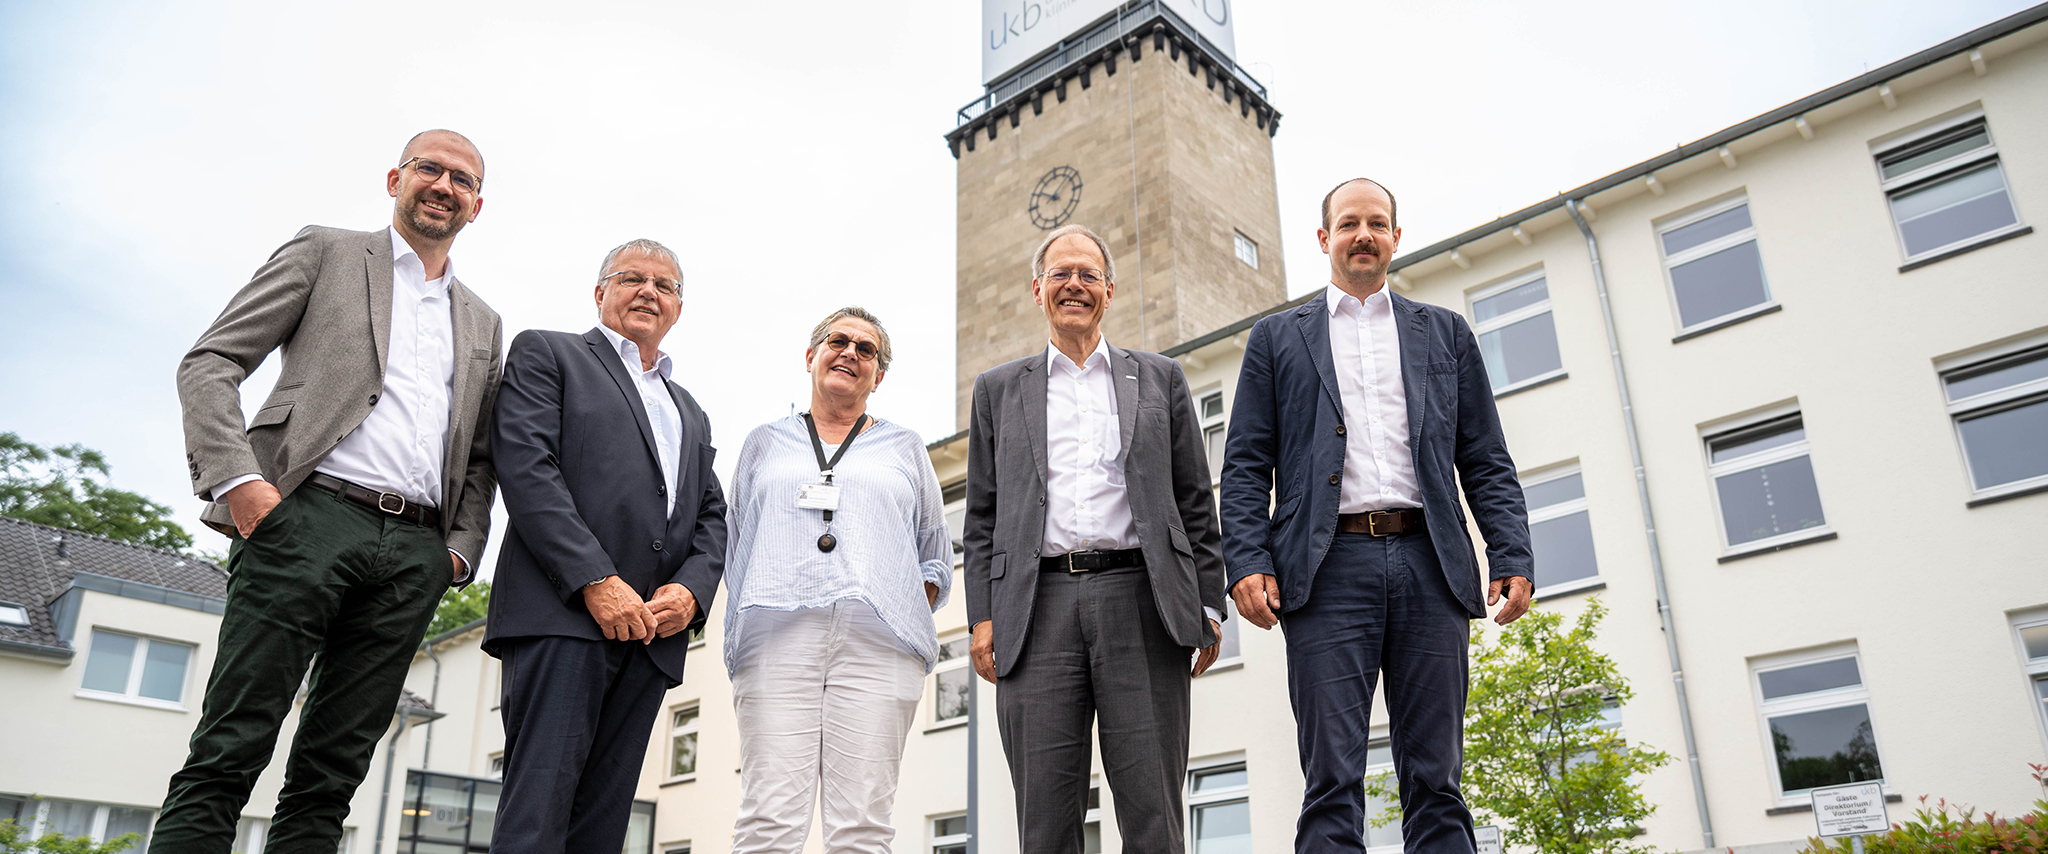 Versorger-Allianz 450 und BonnNetz nehmen ersten 450 MHz-Funkmast in Bonn am Universitätsklinikum in Betrieb